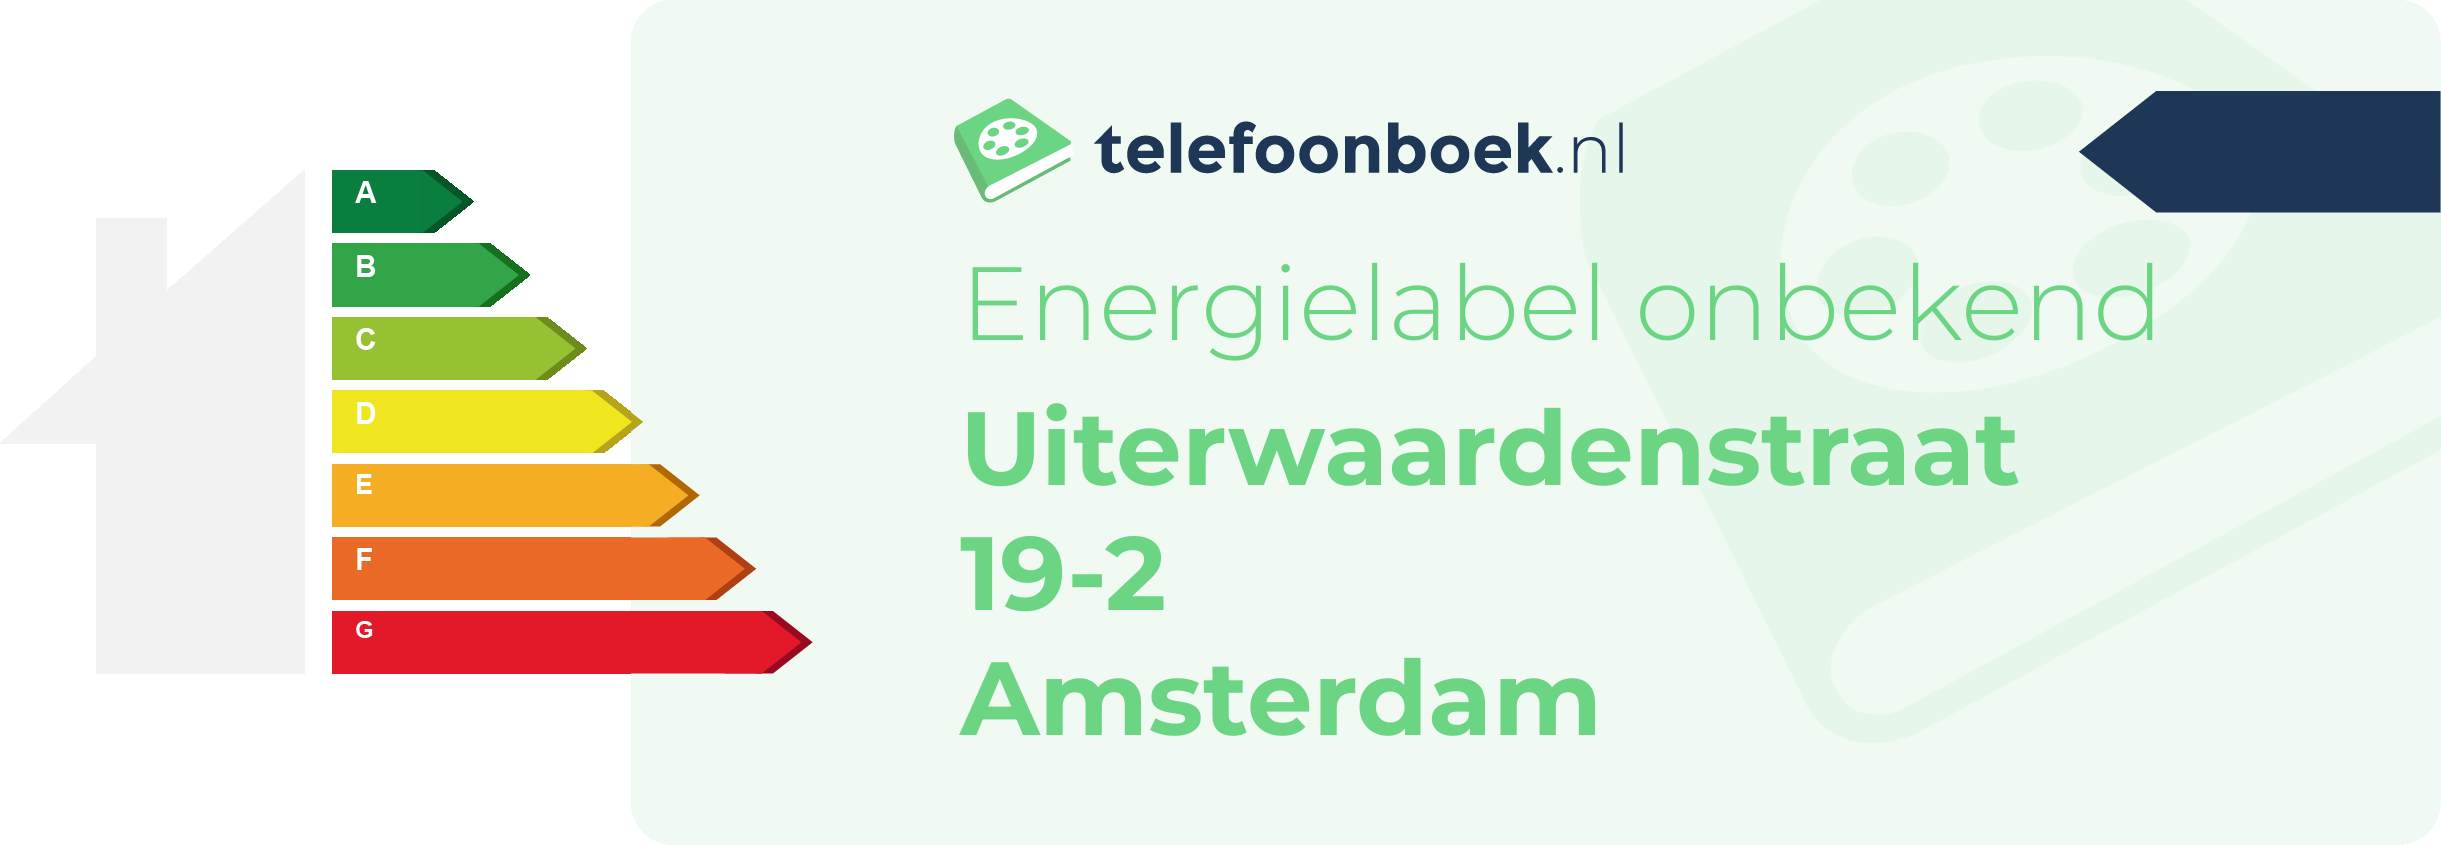 Energielabel Uiterwaardenstraat 19-2 Amsterdam